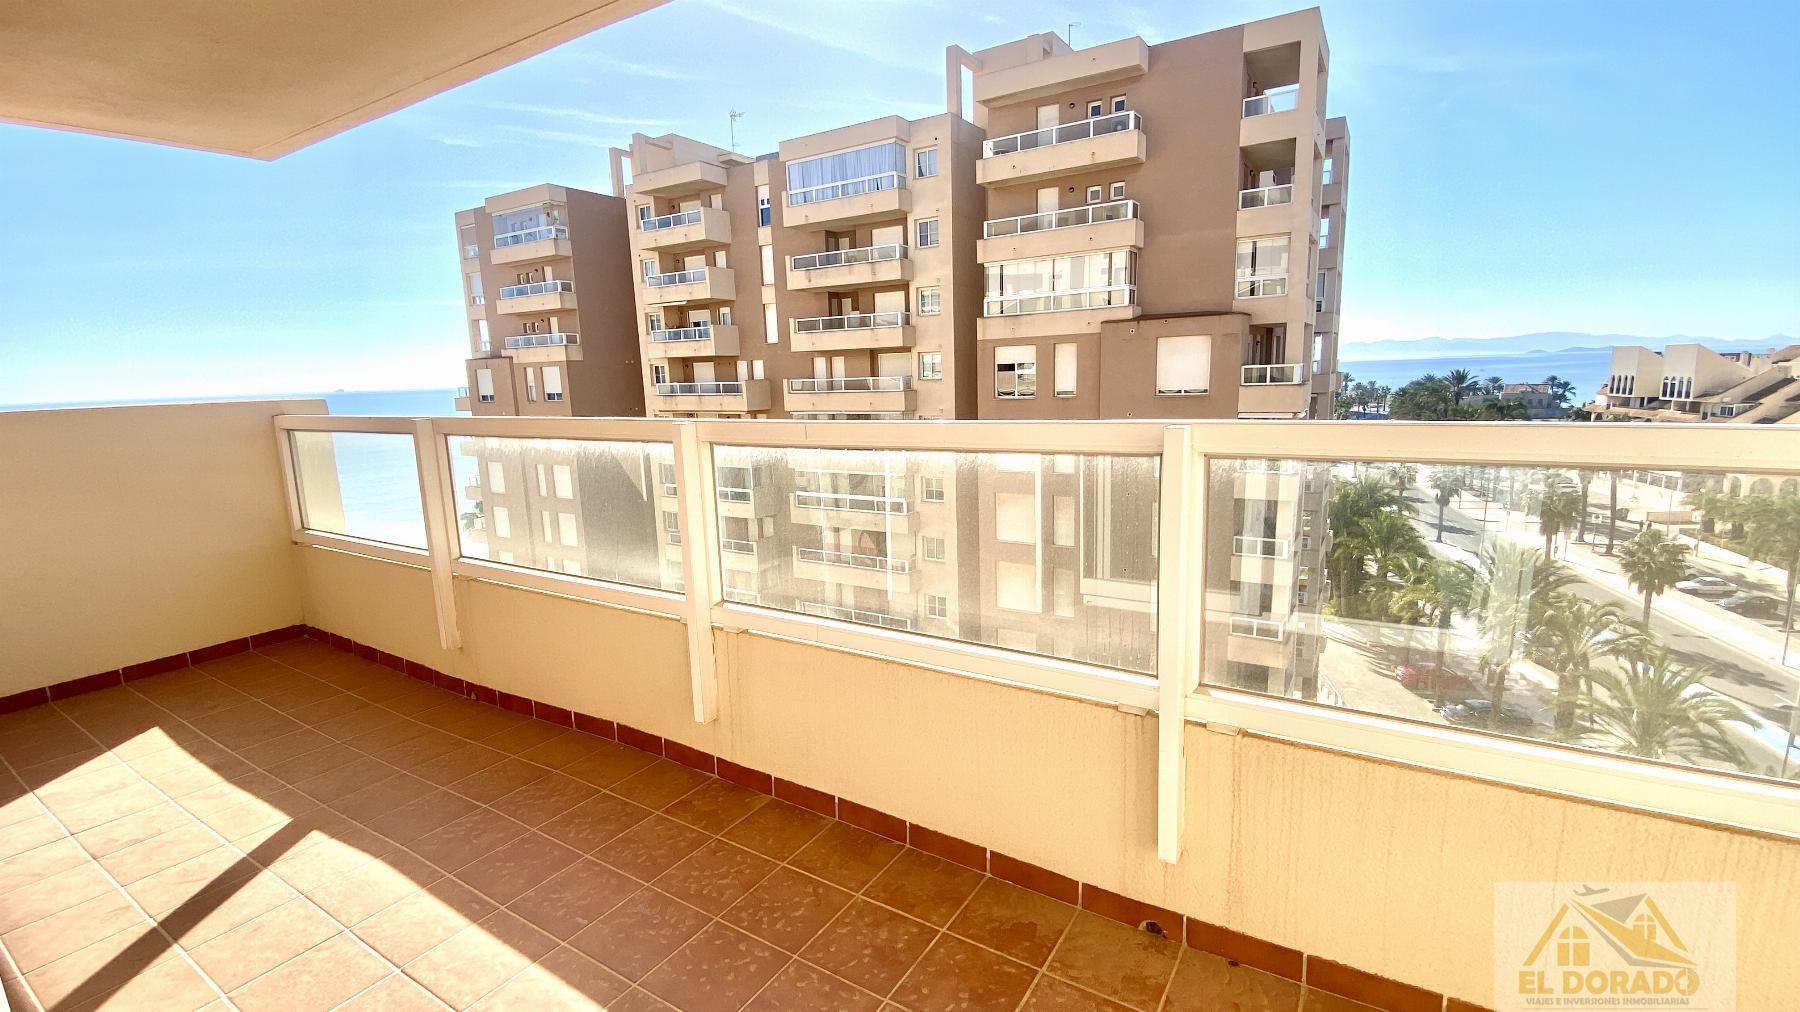 Köp av lägenhet i La Manga del Mar Menor